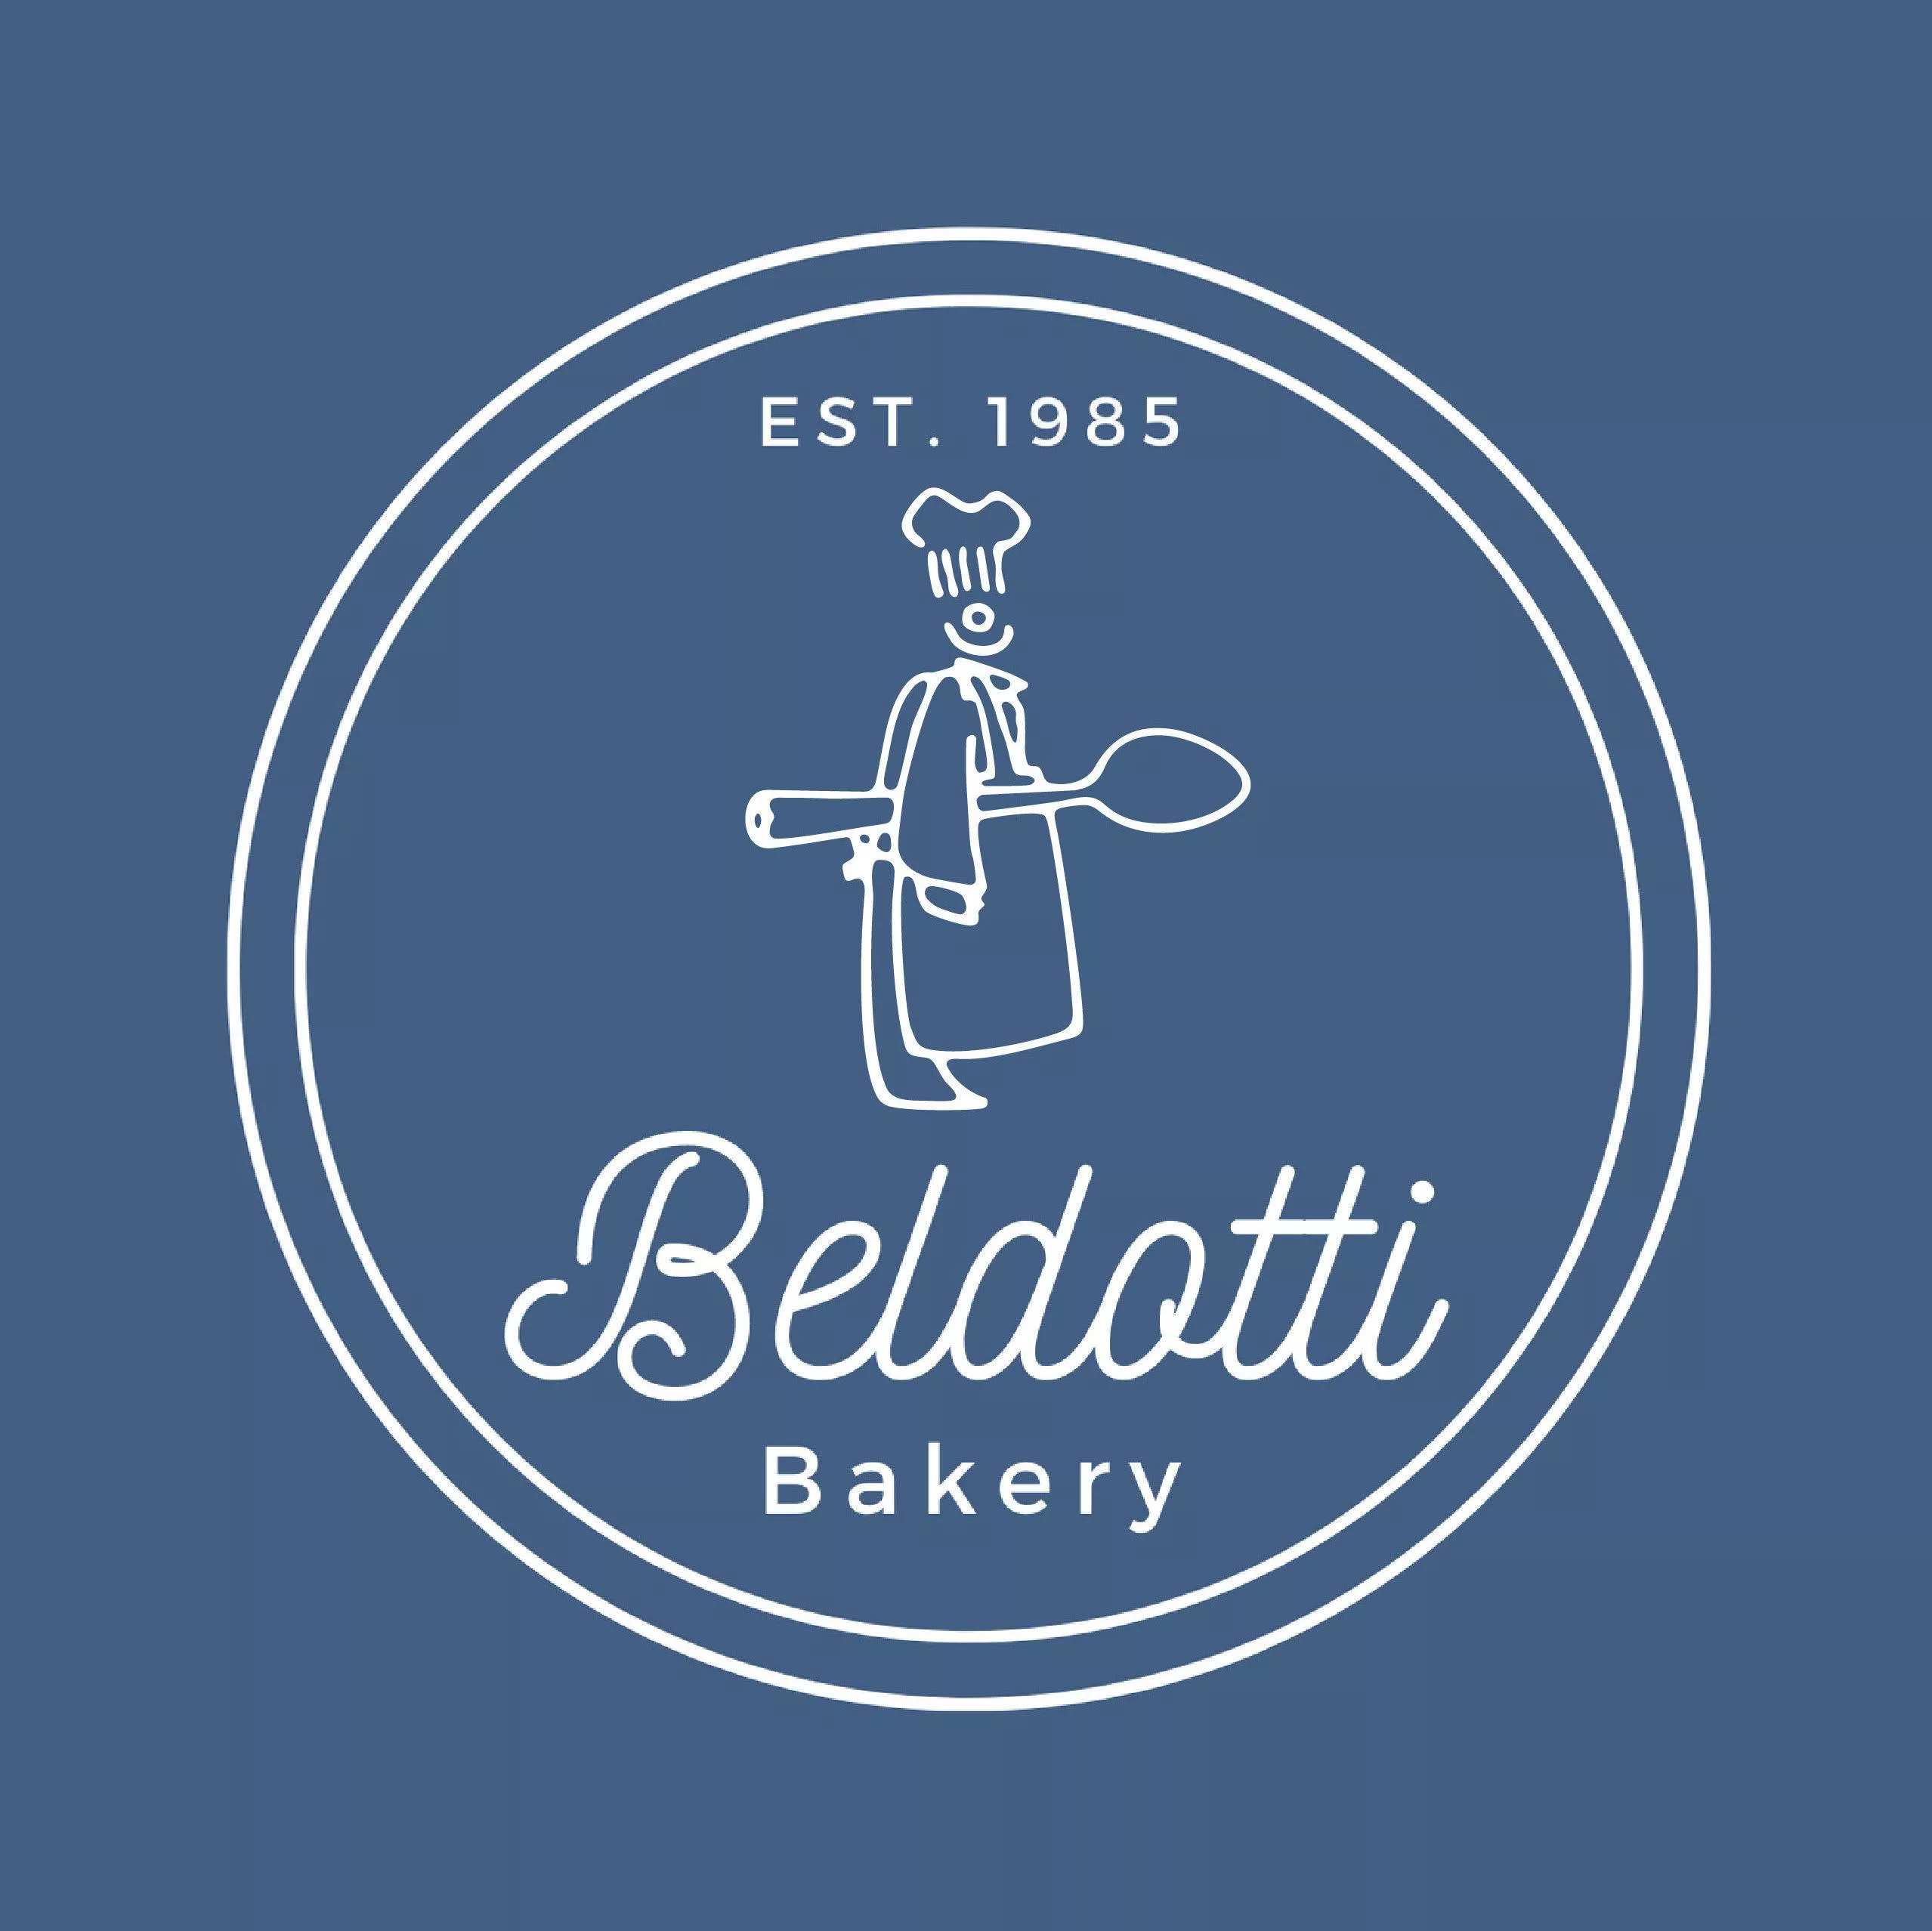 Beldotti Bakery